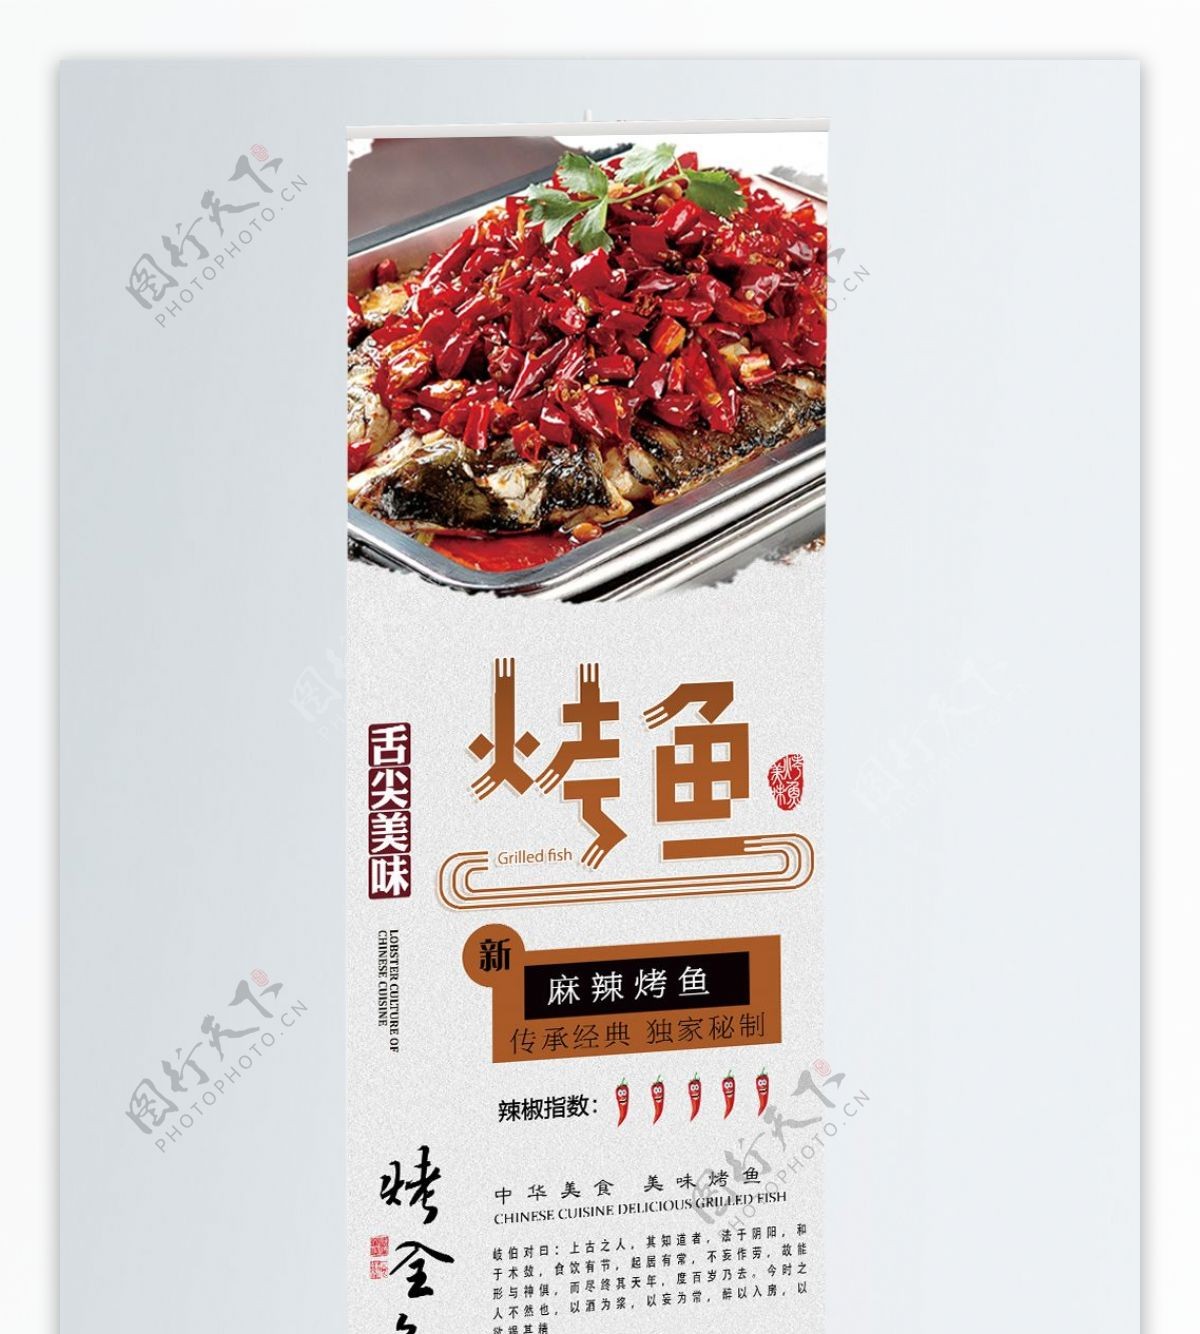 中国风美食烤鱼展架易拉宝